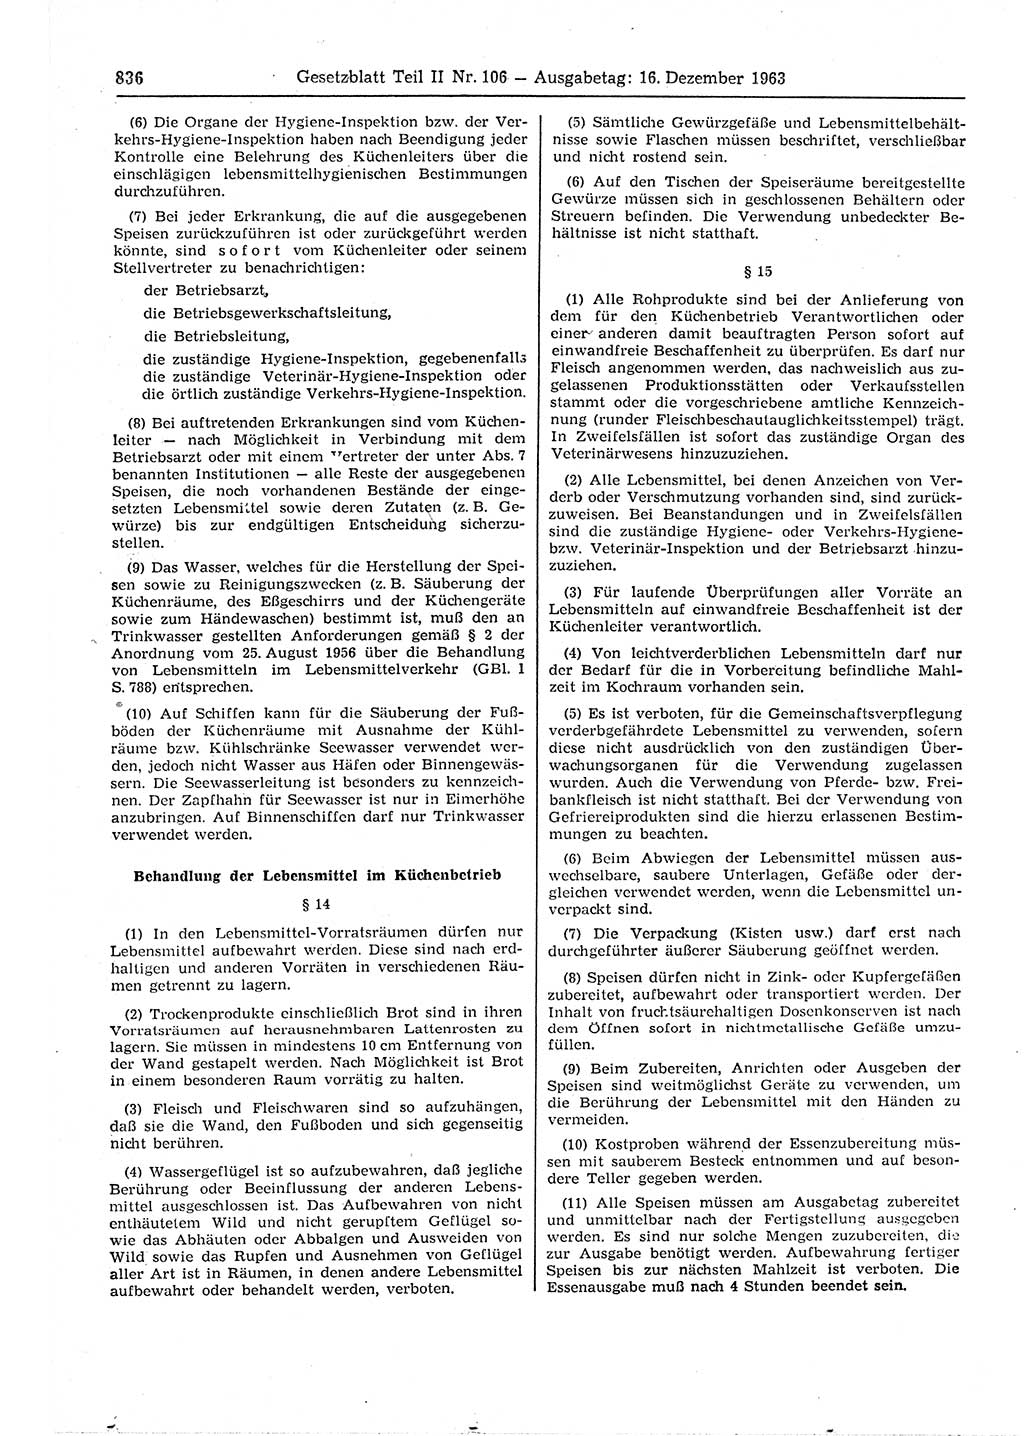 Gesetzblatt (GBl.) der Deutschen Demokratischen Republik (DDR) Teil ⅠⅠ 1963, Seite 836 (GBl. DDR ⅠⅠ 1963, S. 836)